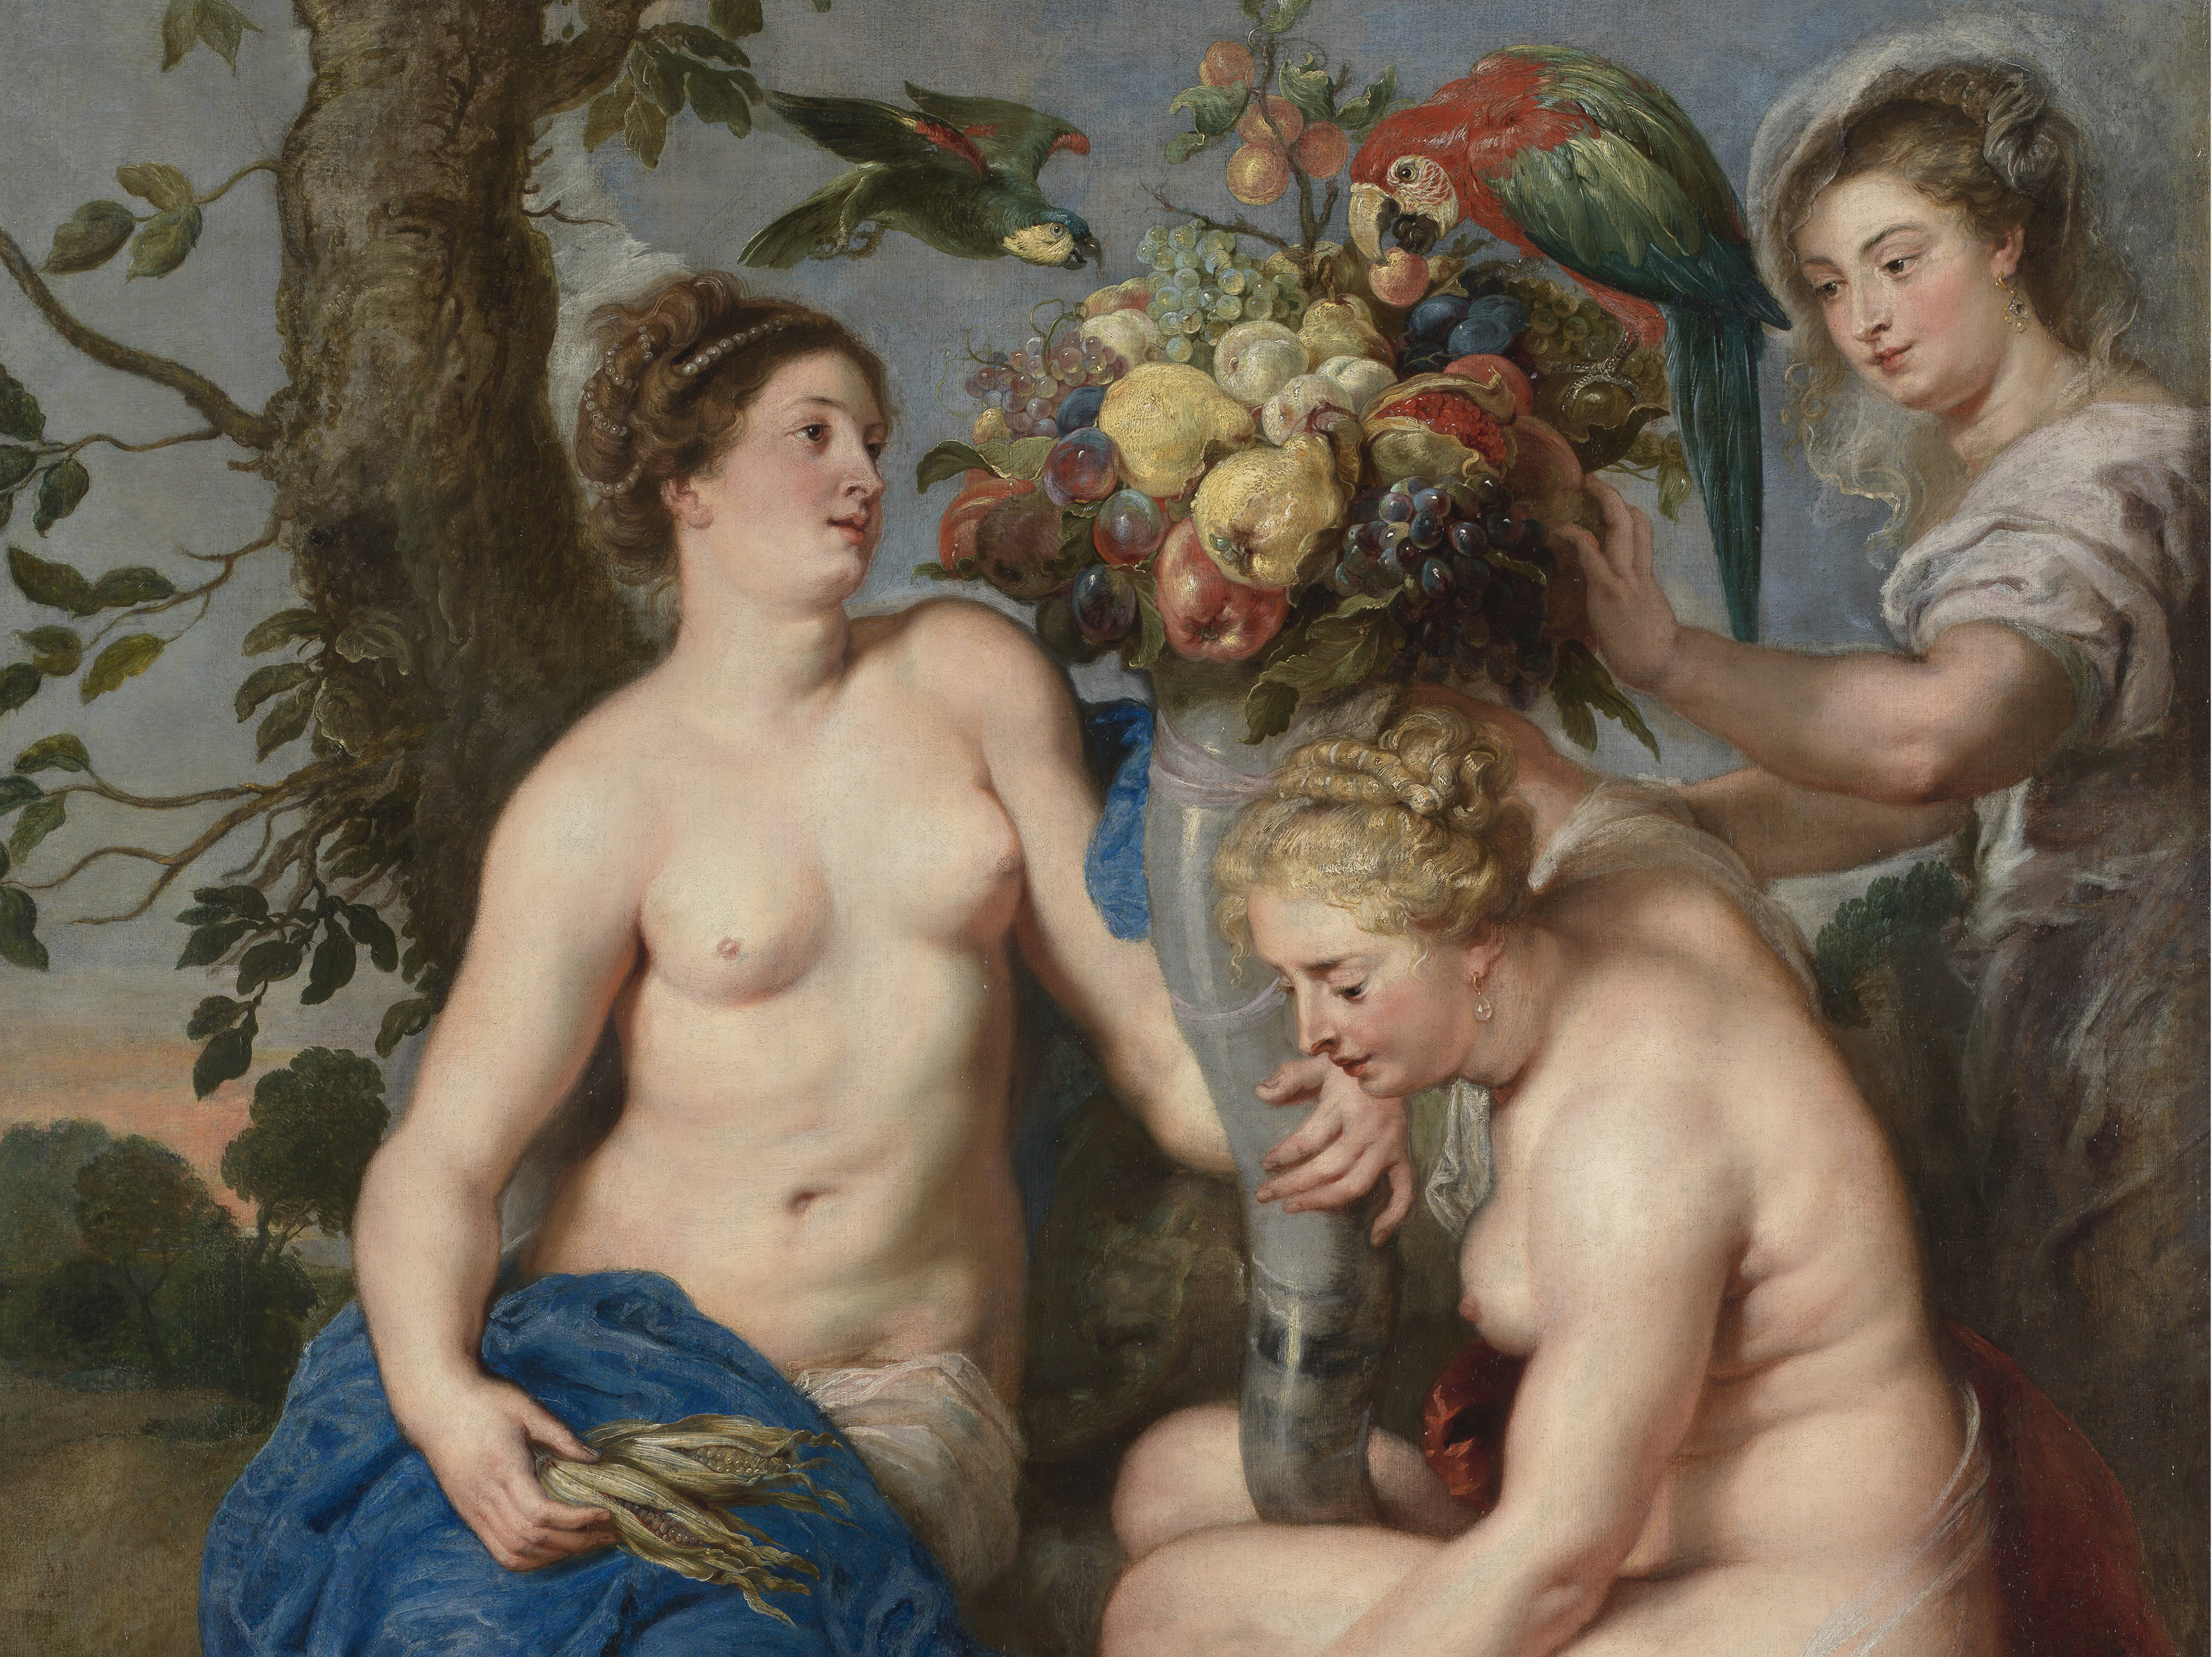 Ceres y dos ninfas Rubens; Snyders 1615 - 1617. Óleo sobre lienzo, 224,5 x 166 cm. Museo Nacional del Prado.